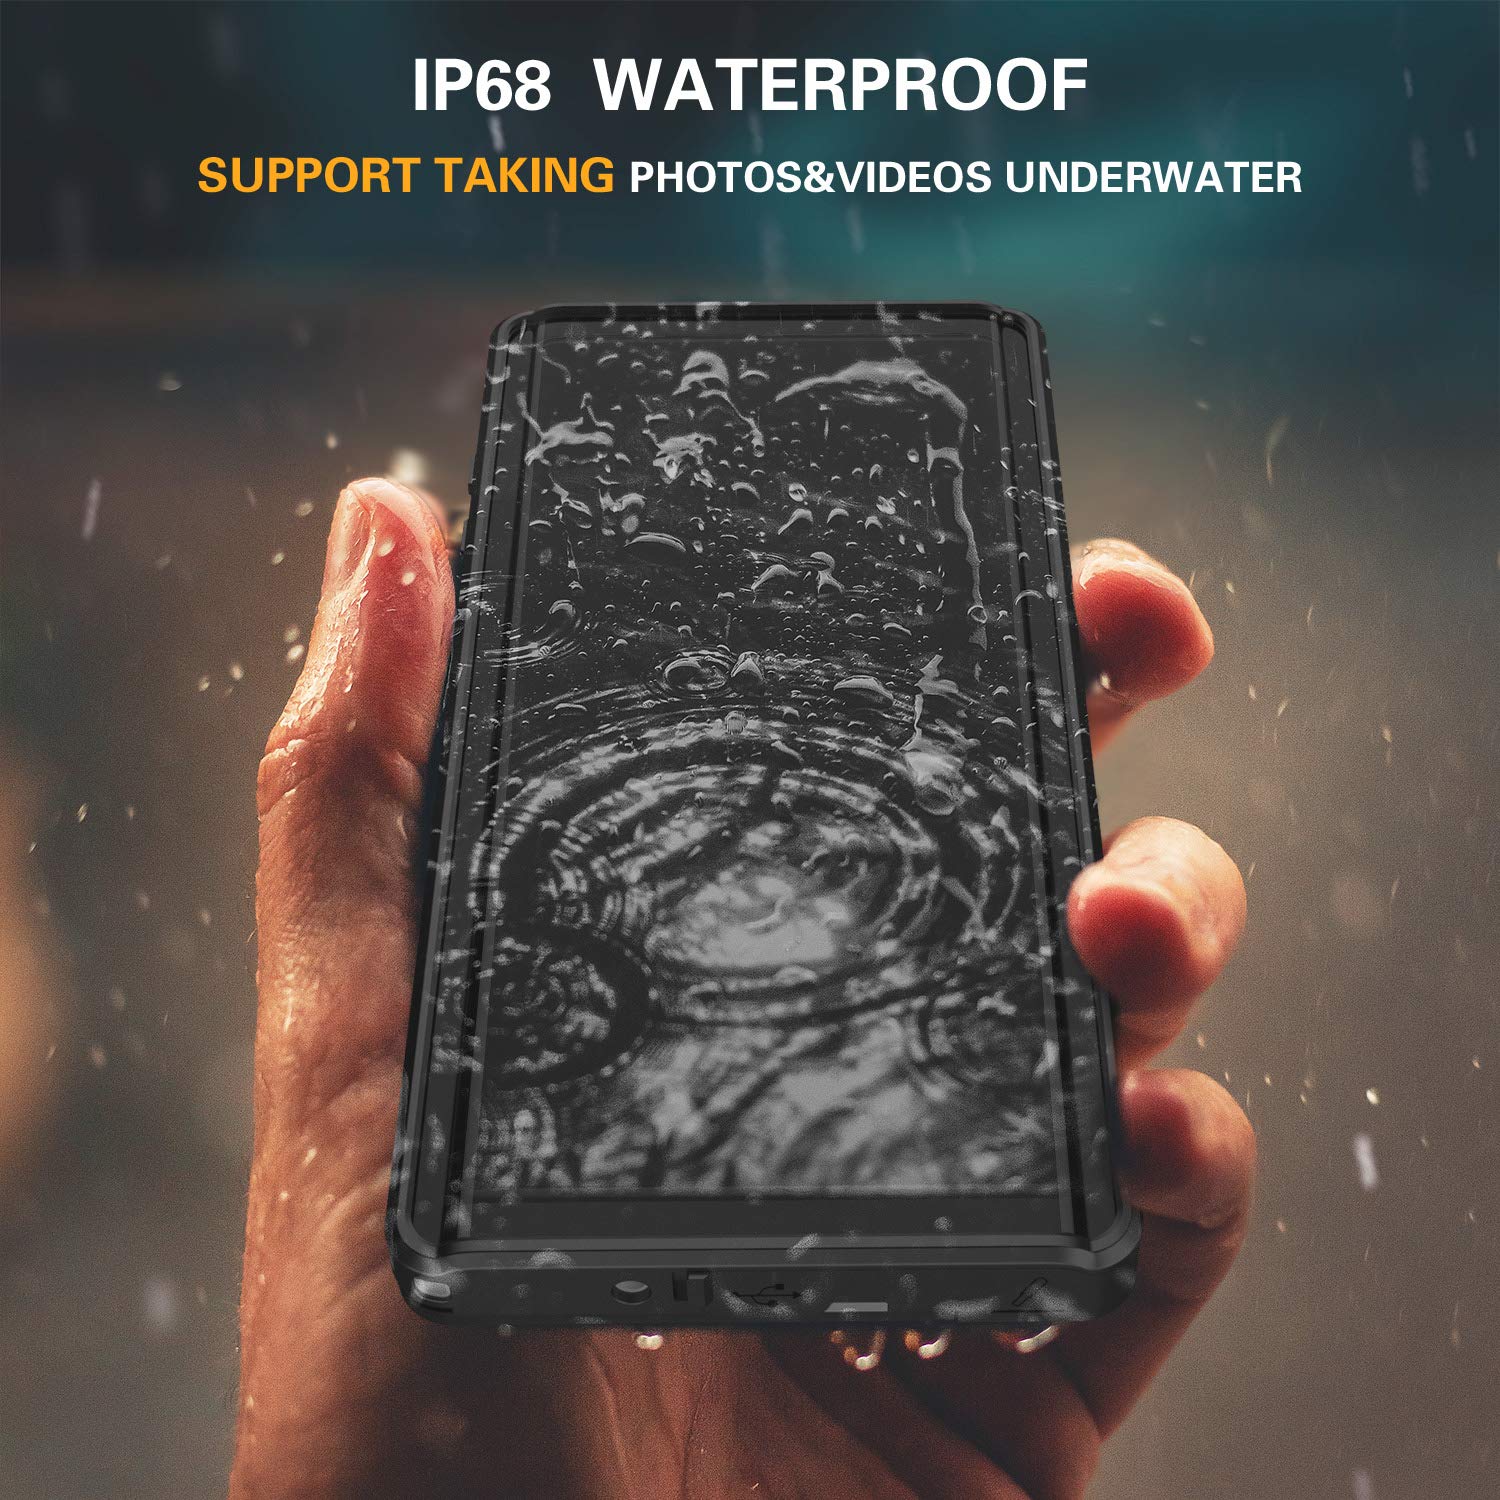 OAKTREE Samsung Galaxy NOTE 10 Shockproof Waterproof Rugged Case - Black/Clear - OAKTREE CASE